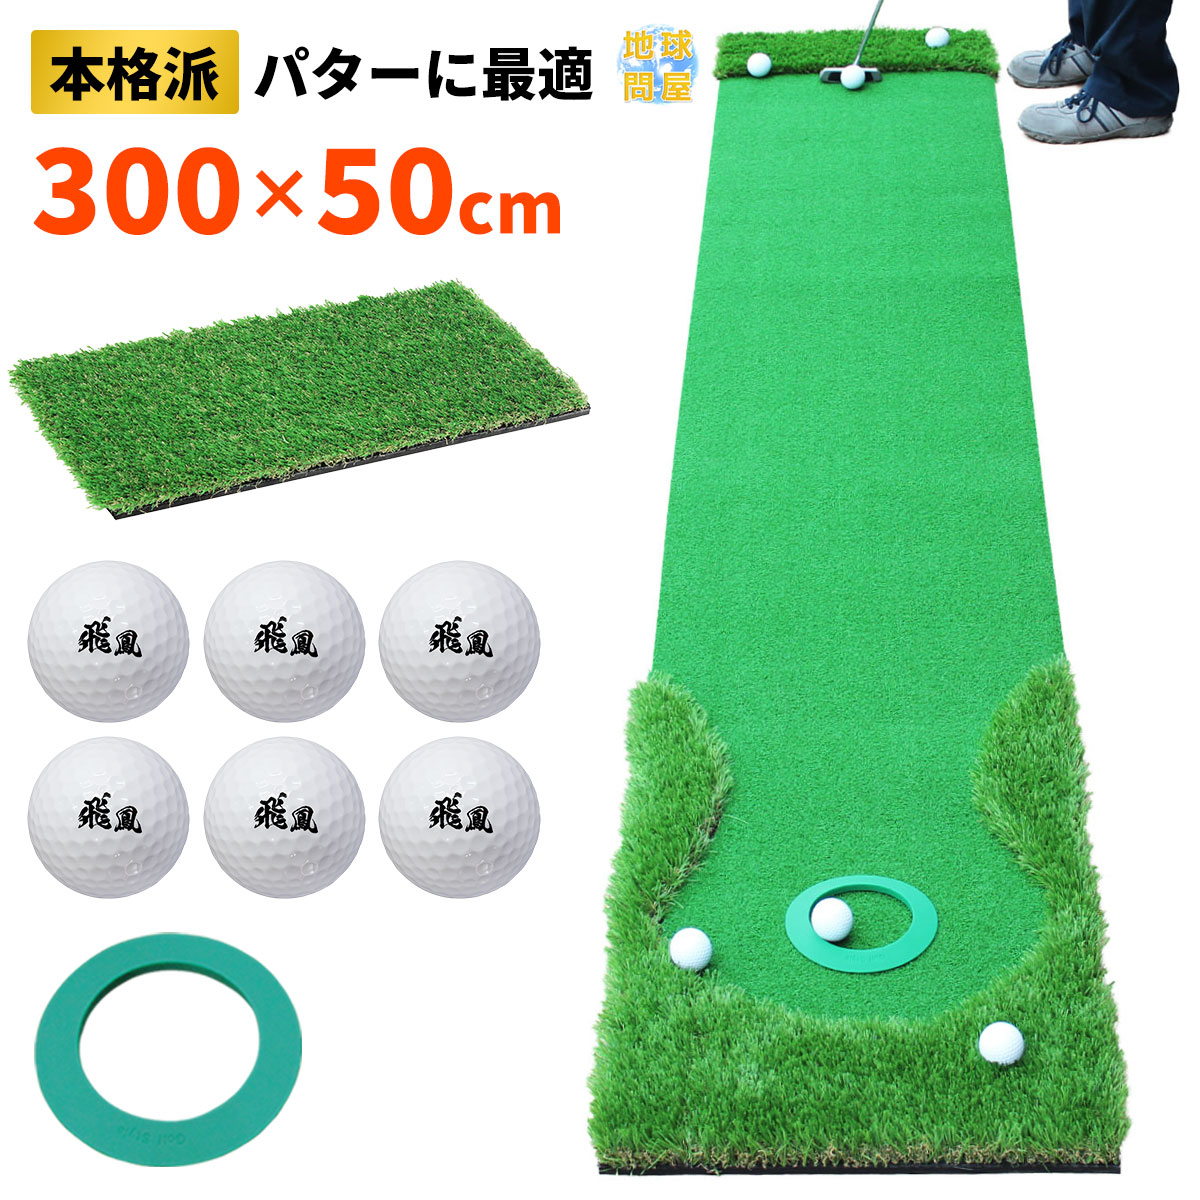 日本のゴルフ場でポピュラーなグリーンを再現しました 初心者から上級者まで扱いやすくパッティング練習でき満足度の高いパターマットです パターマット  パッティング練習 パット 自宅 芝 ゴルフパター練習 ギフト プレゼント パター練習マット ゴルフパターマット 40cm ...